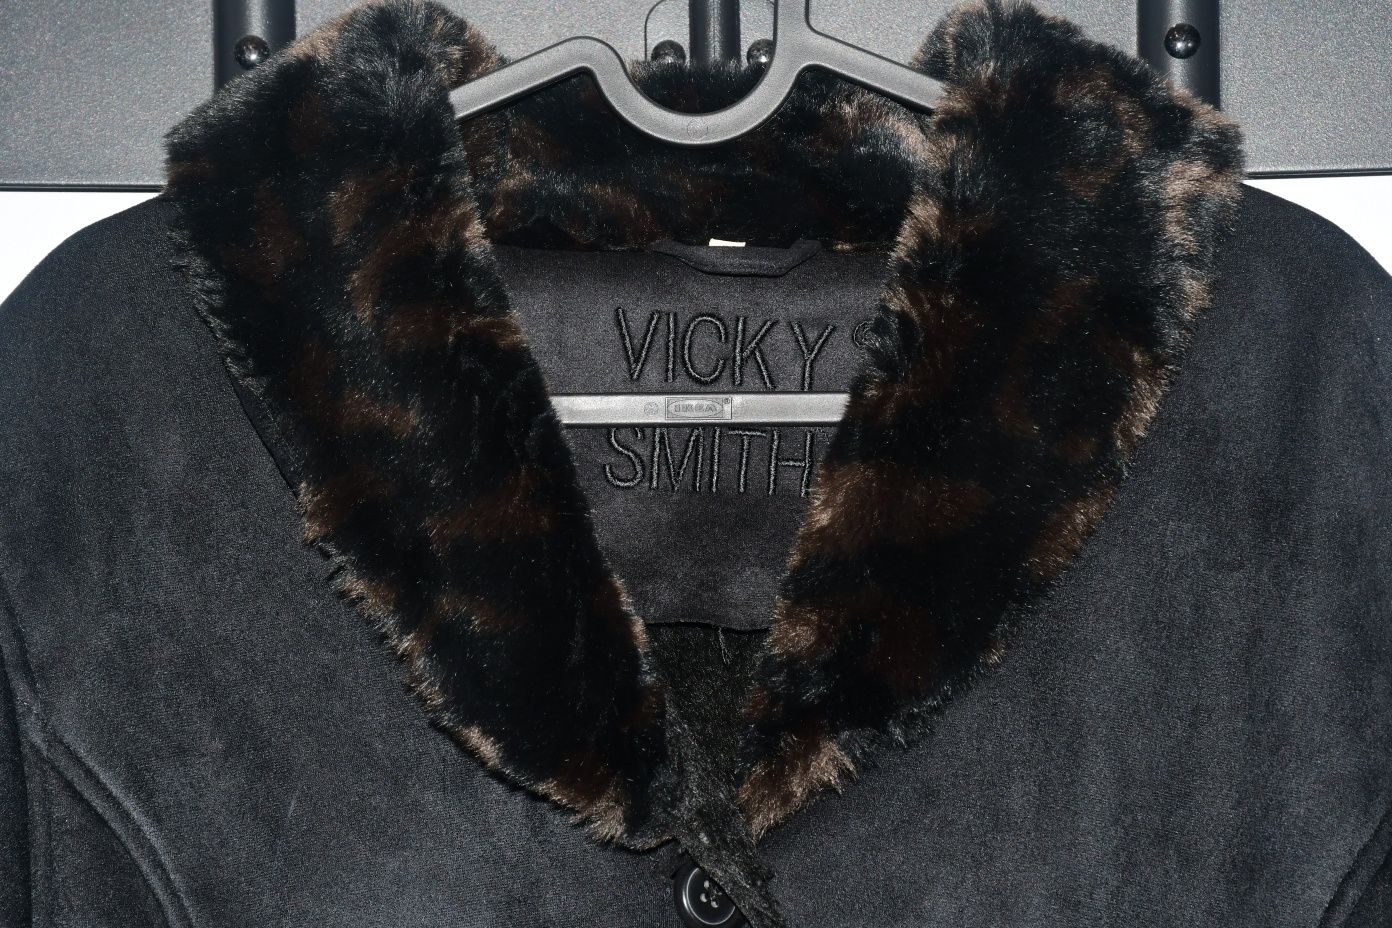 Kurtka płaszcz sztuczne futro Vicky Smith rozmiar XL